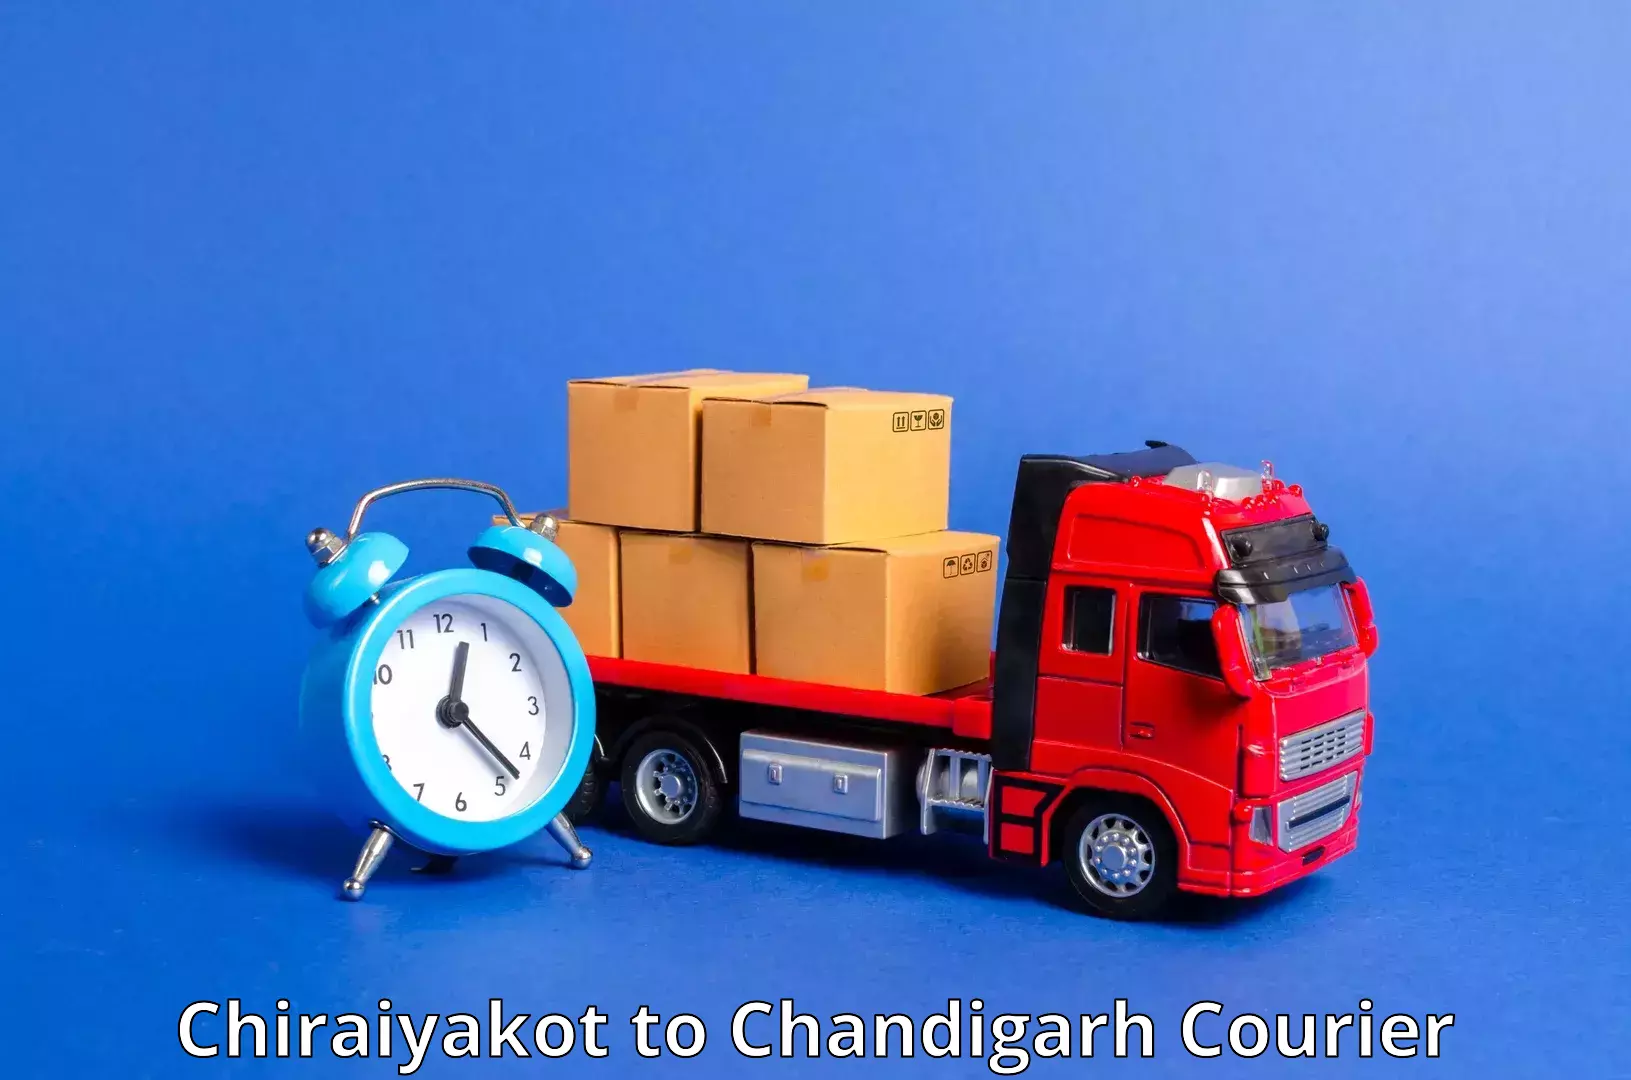 Fast delivery service Chiraiyakot to Panjab University Chandigarh